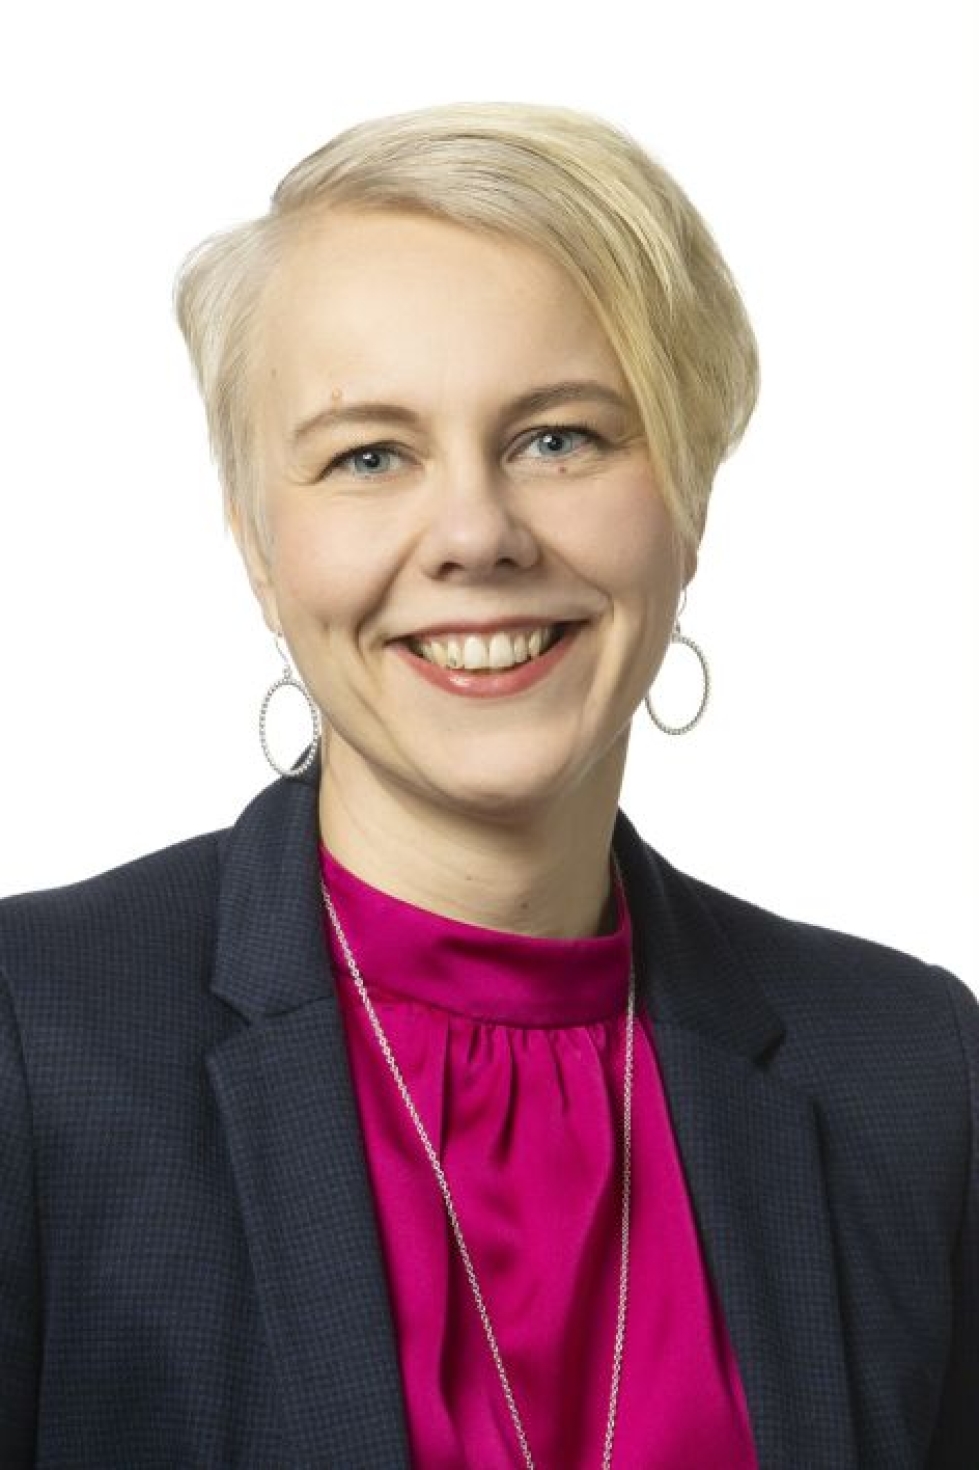 Satakunnan vaalipiirissä läpi menneen Heidi Viljasen (sd.) kannoilla tullut Mikko Uusitalo (kesk.) jäi vain 51 vertailulukuäänen päähän. LEHTIKUVA / HANDOUT